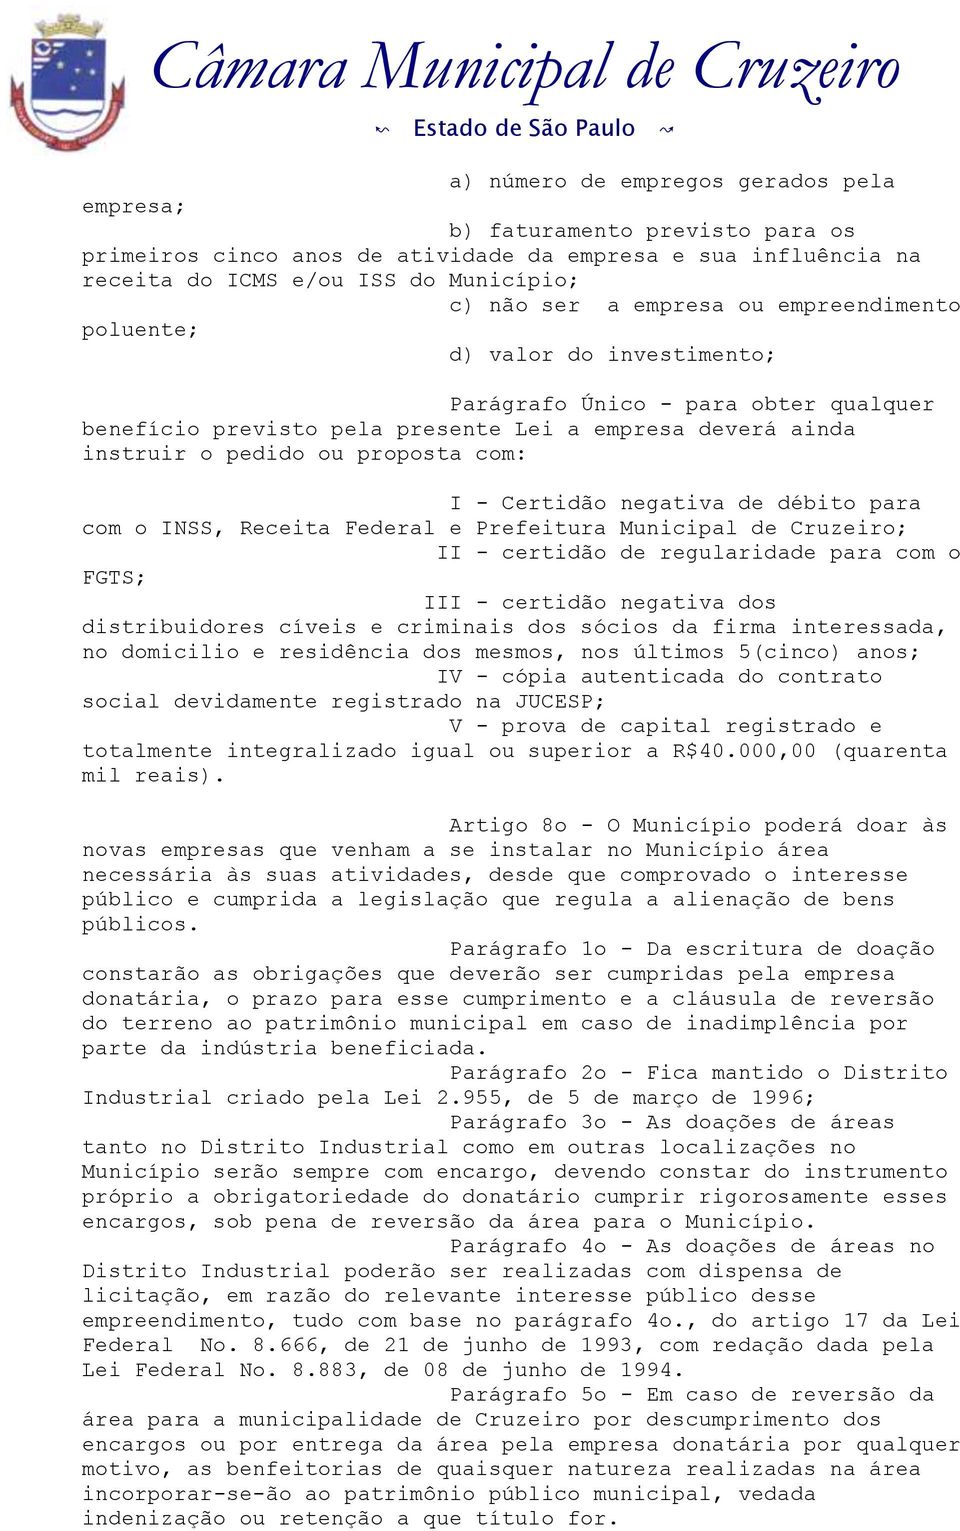 Certidão negativa de débito para com o INSS, Receita Federal e Prefeitura Municipal de Cruzeiro; II - certidão de regularidade para com o FGTS; III - certidão negativa dos distribuidores cíveis e